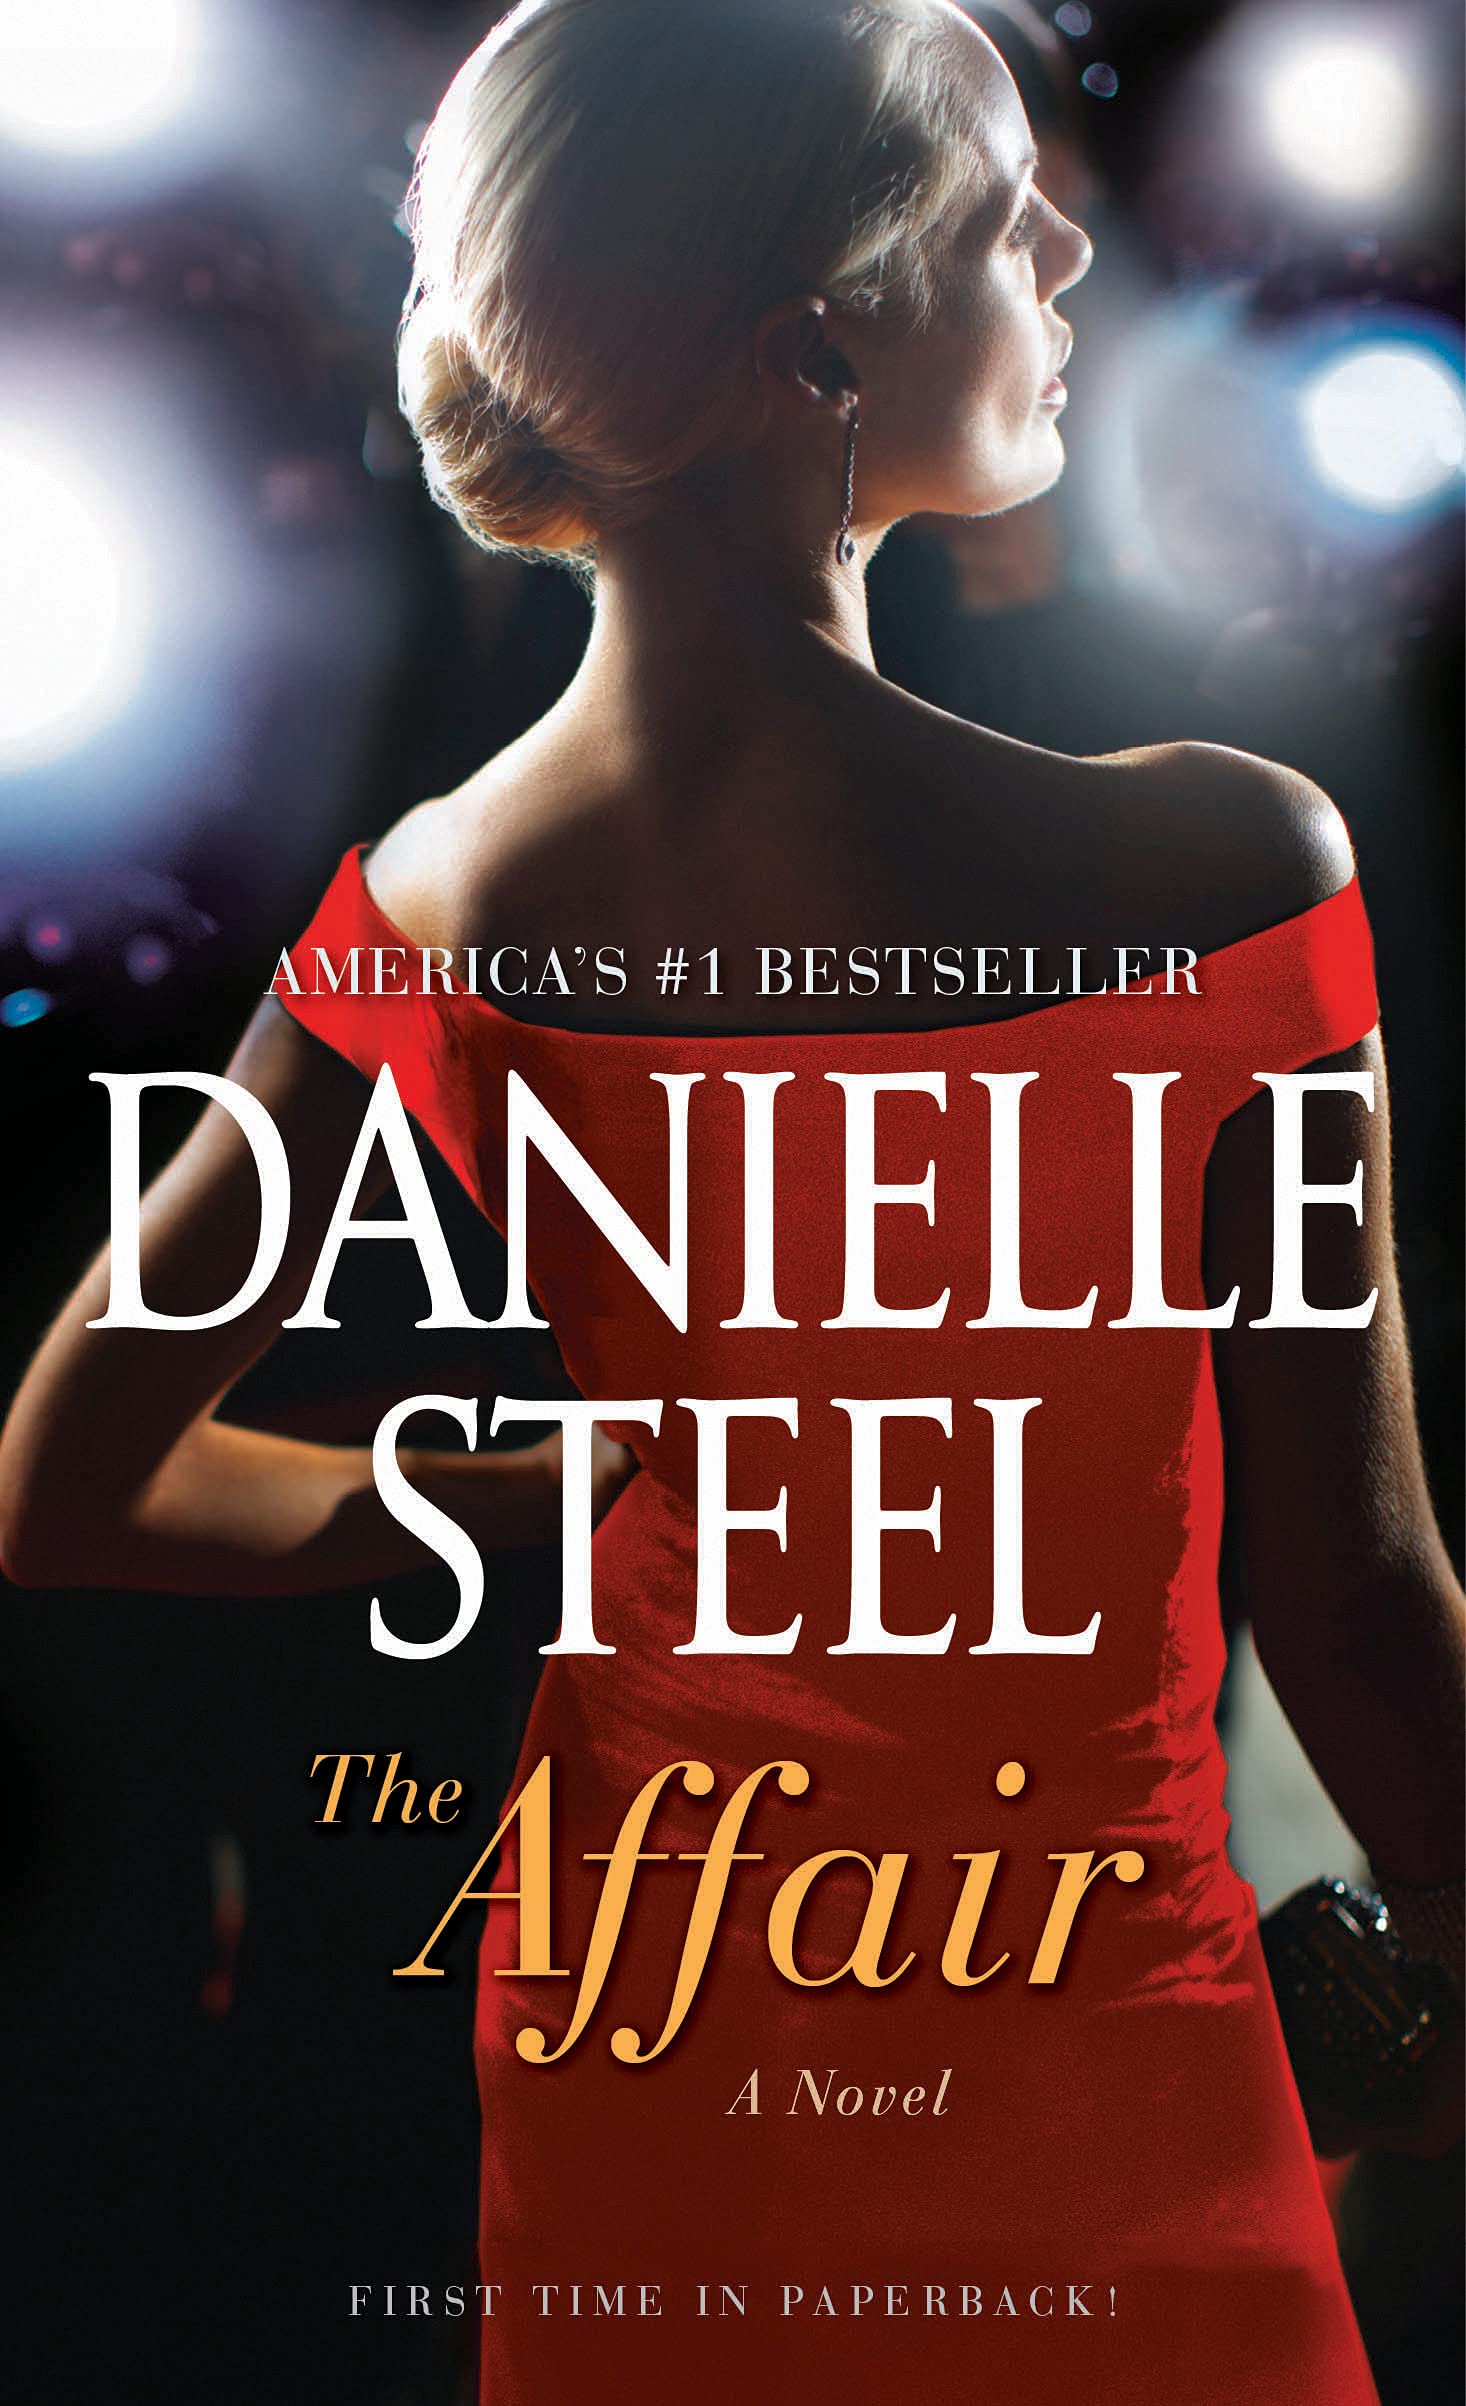 The Affair: A Novel Mass Market Paperback by Danielle Steel